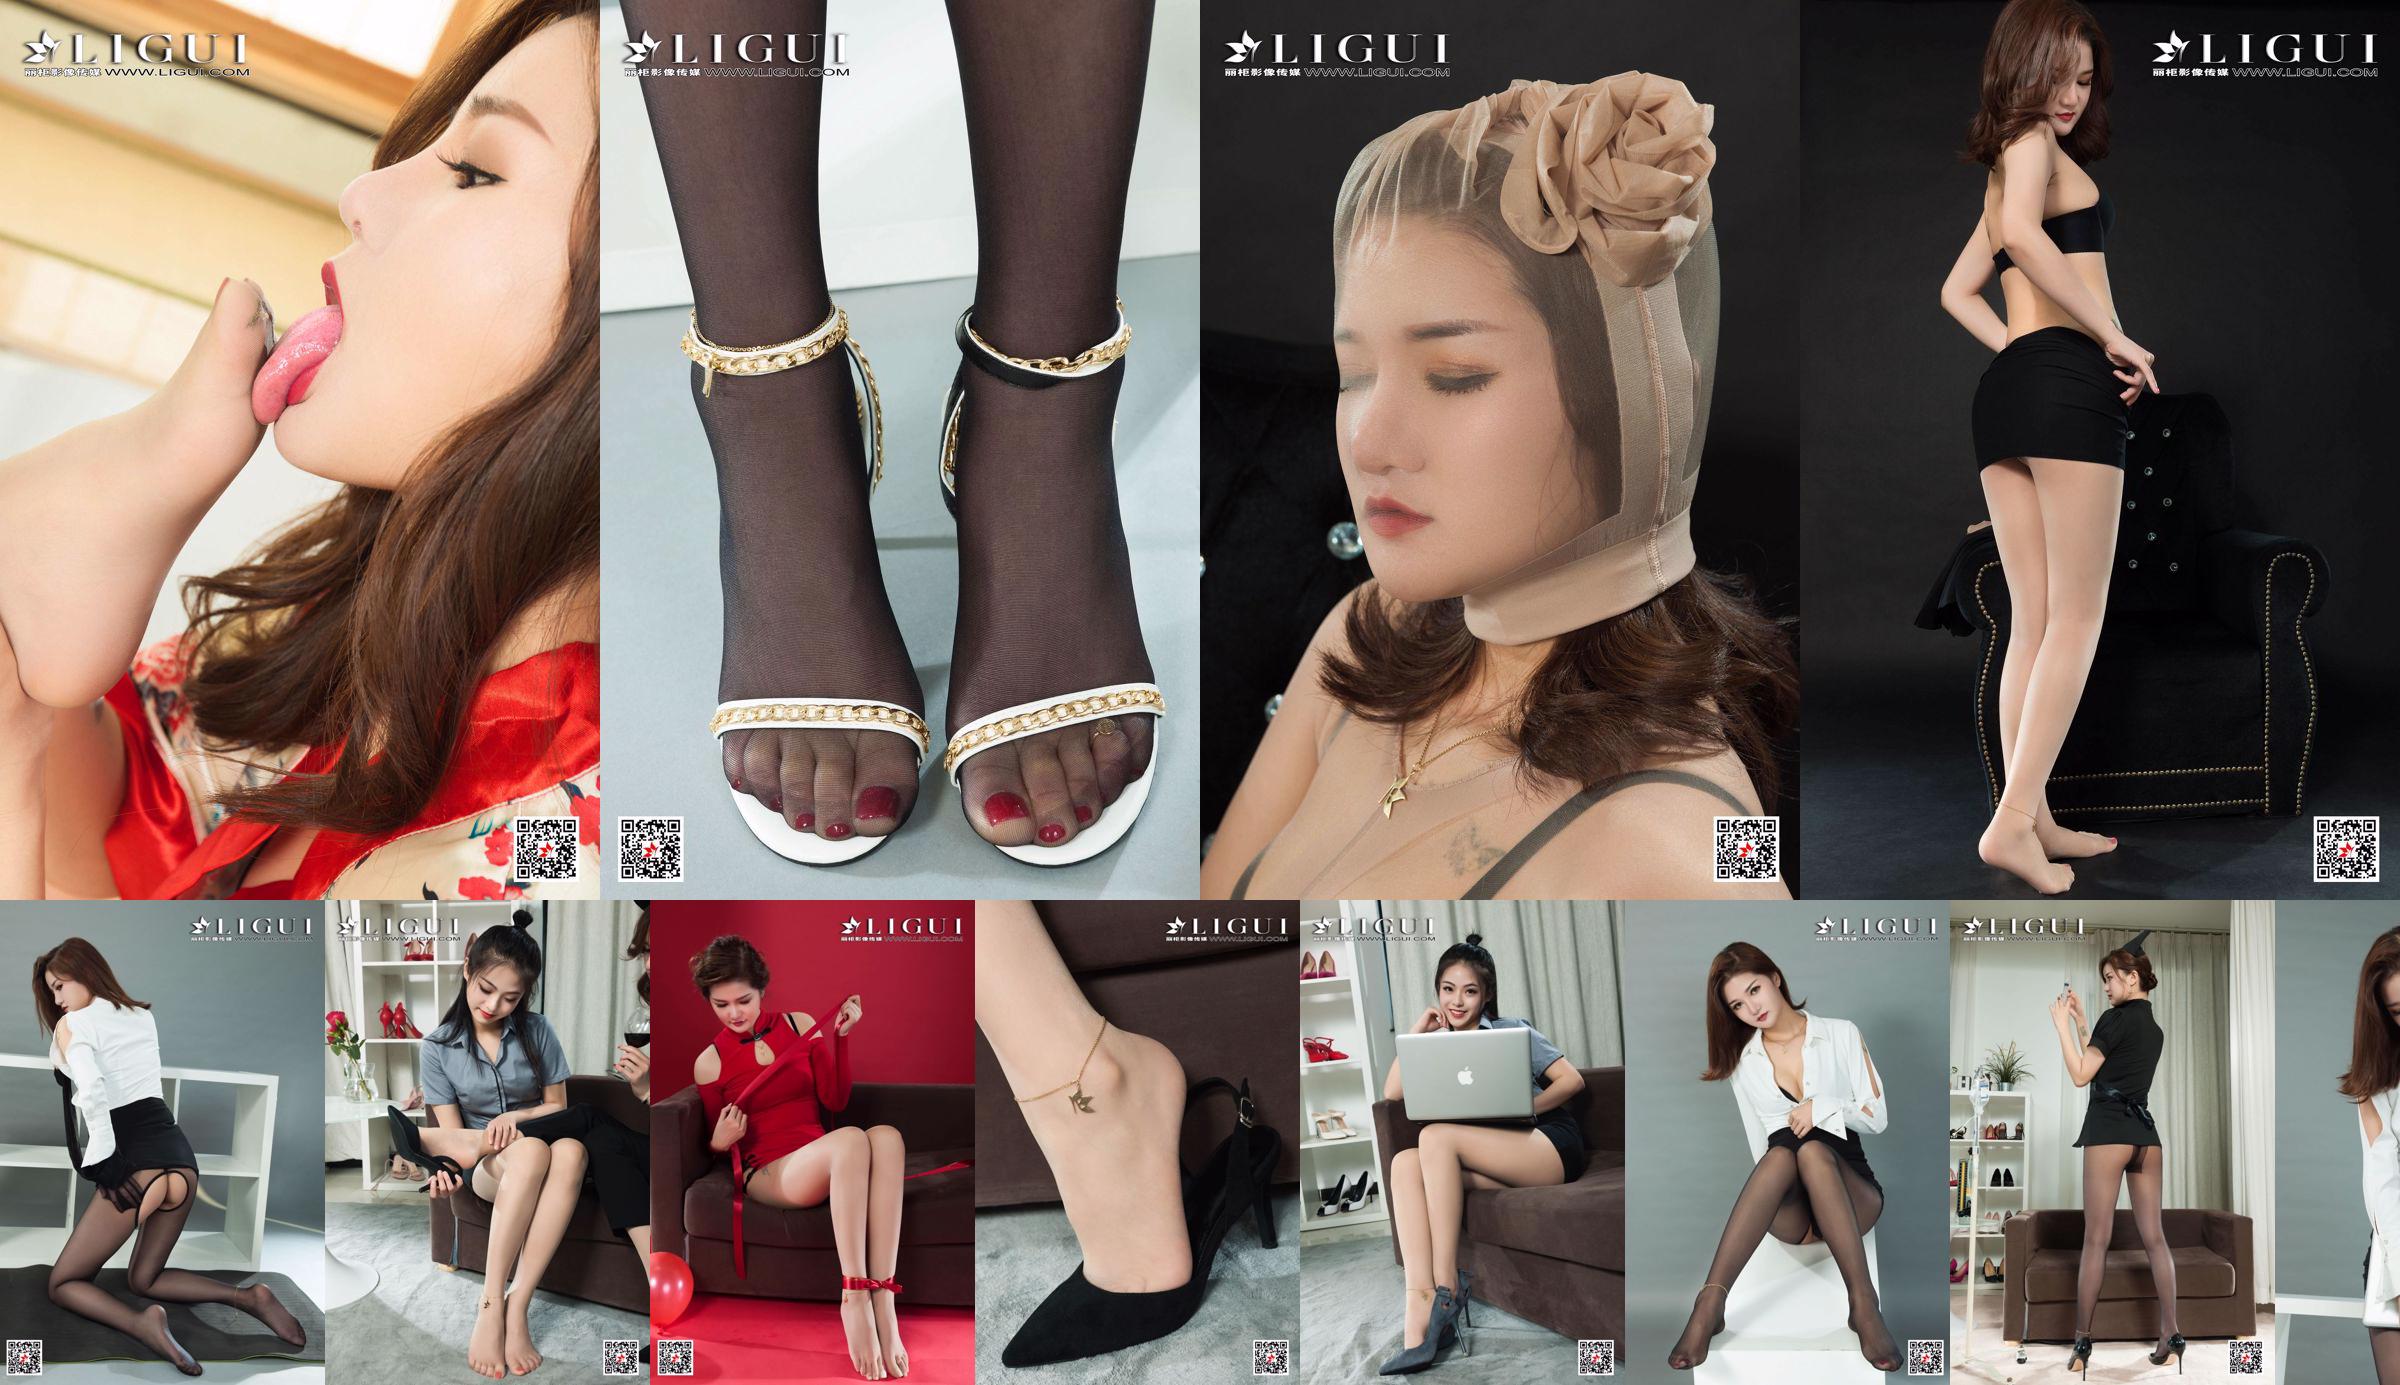 [丽 柜 Ligui] Model Bunsho 《Kimono 丝 foot》 No.bb9793 Halaman 1